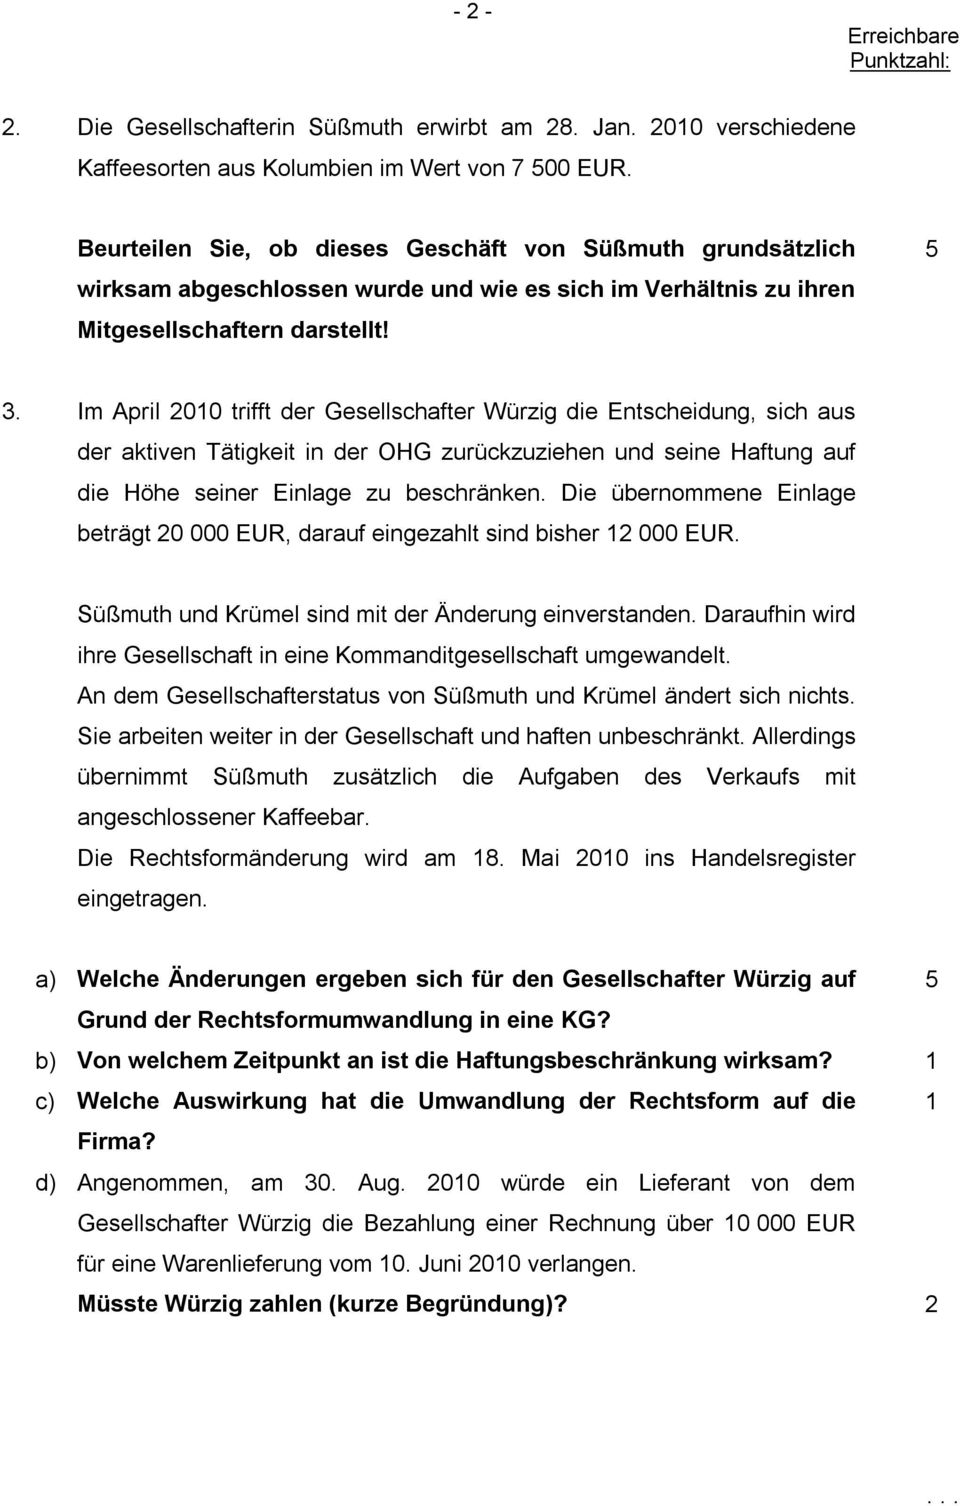 Im April 2010 trifft der Gesellschafter Würzig die Entscheidung, sich aus der aktiven Tätigkeit in der OHG zurückzuziehen und seine Haftung auf die Höhe seiner Einlage zu beschränken.